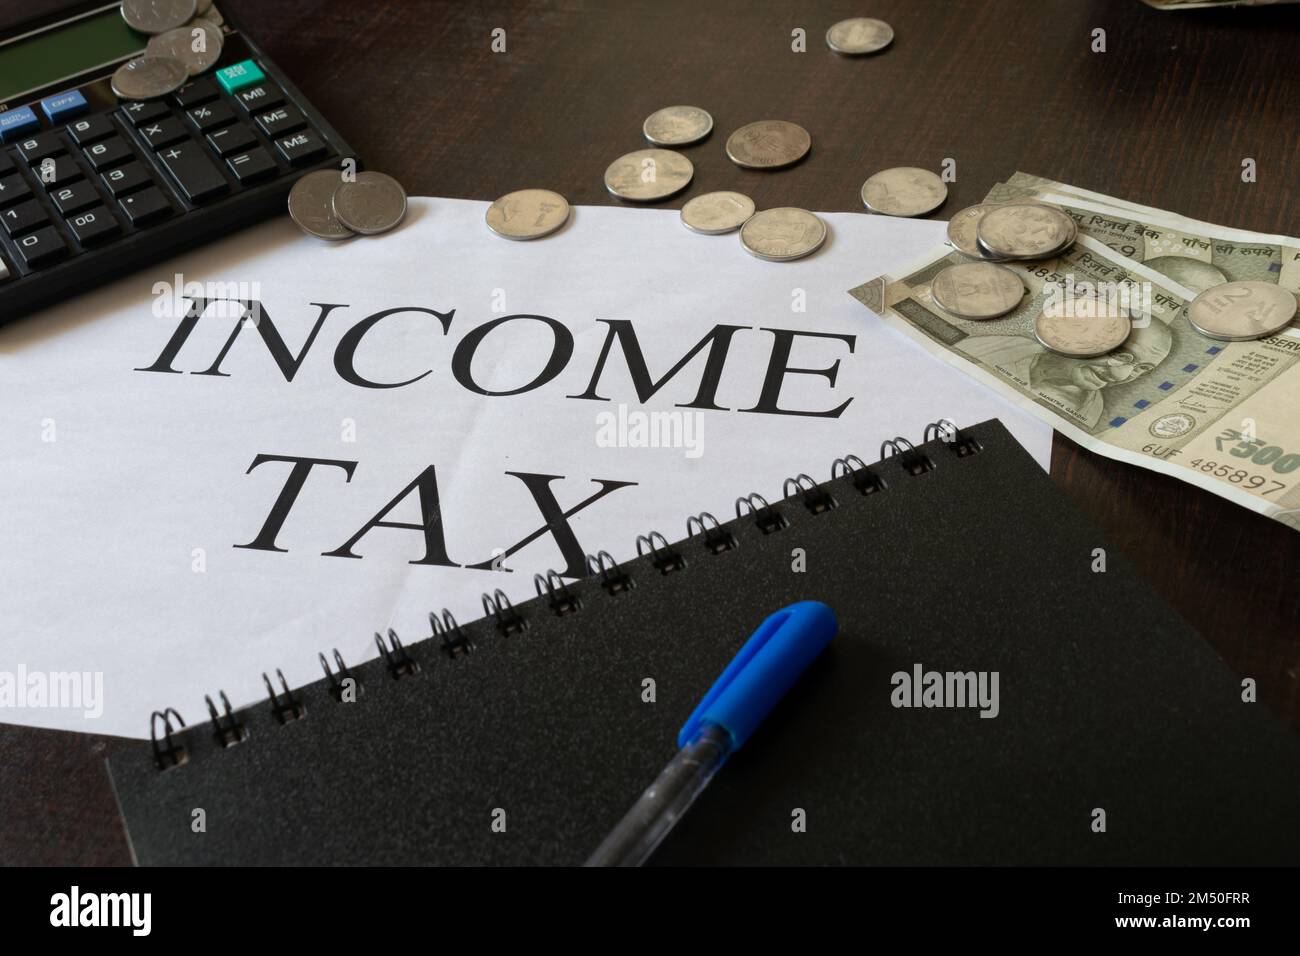 Bild der Einkommensteuer auf einer Seite mit Taschenrechner, Tagebuch, Bargeld, Stift und einer Tasse Infosys. Budget, Einkommensteuererklärung, Einreichung, Geschäft, Job, savi Stockfoto